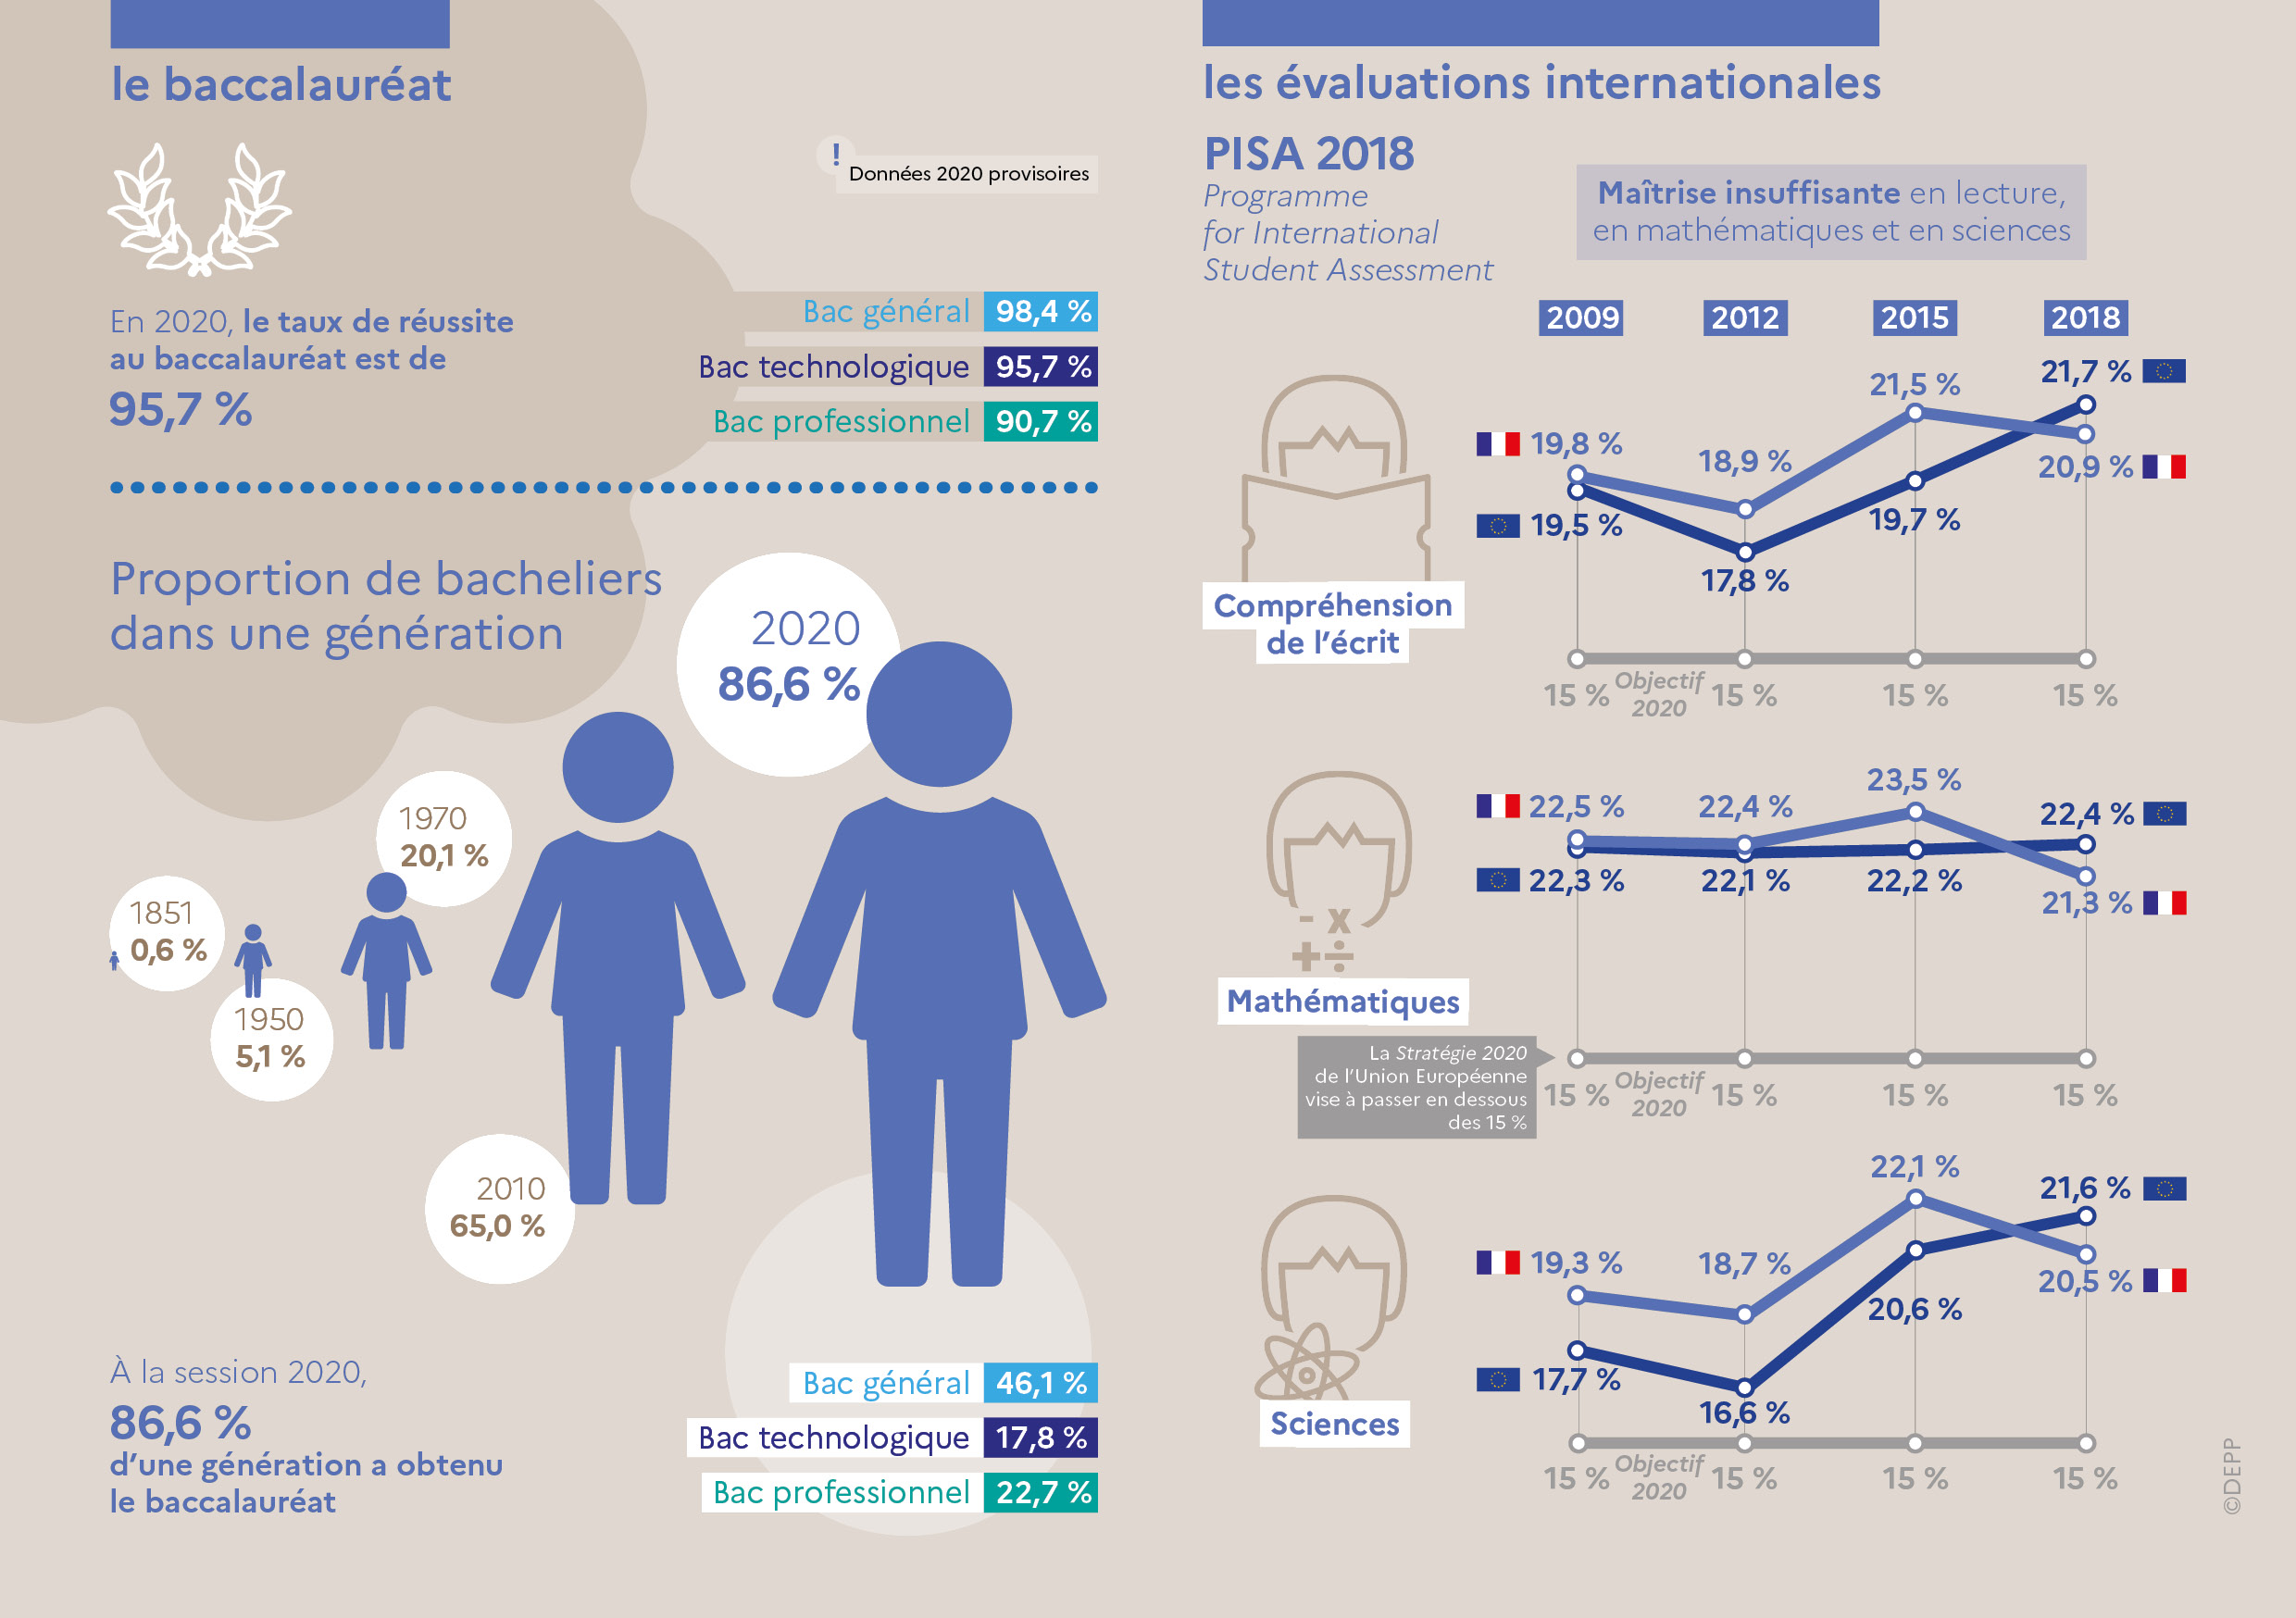 Infographie - Le baccalauréat et les évaluations internationales